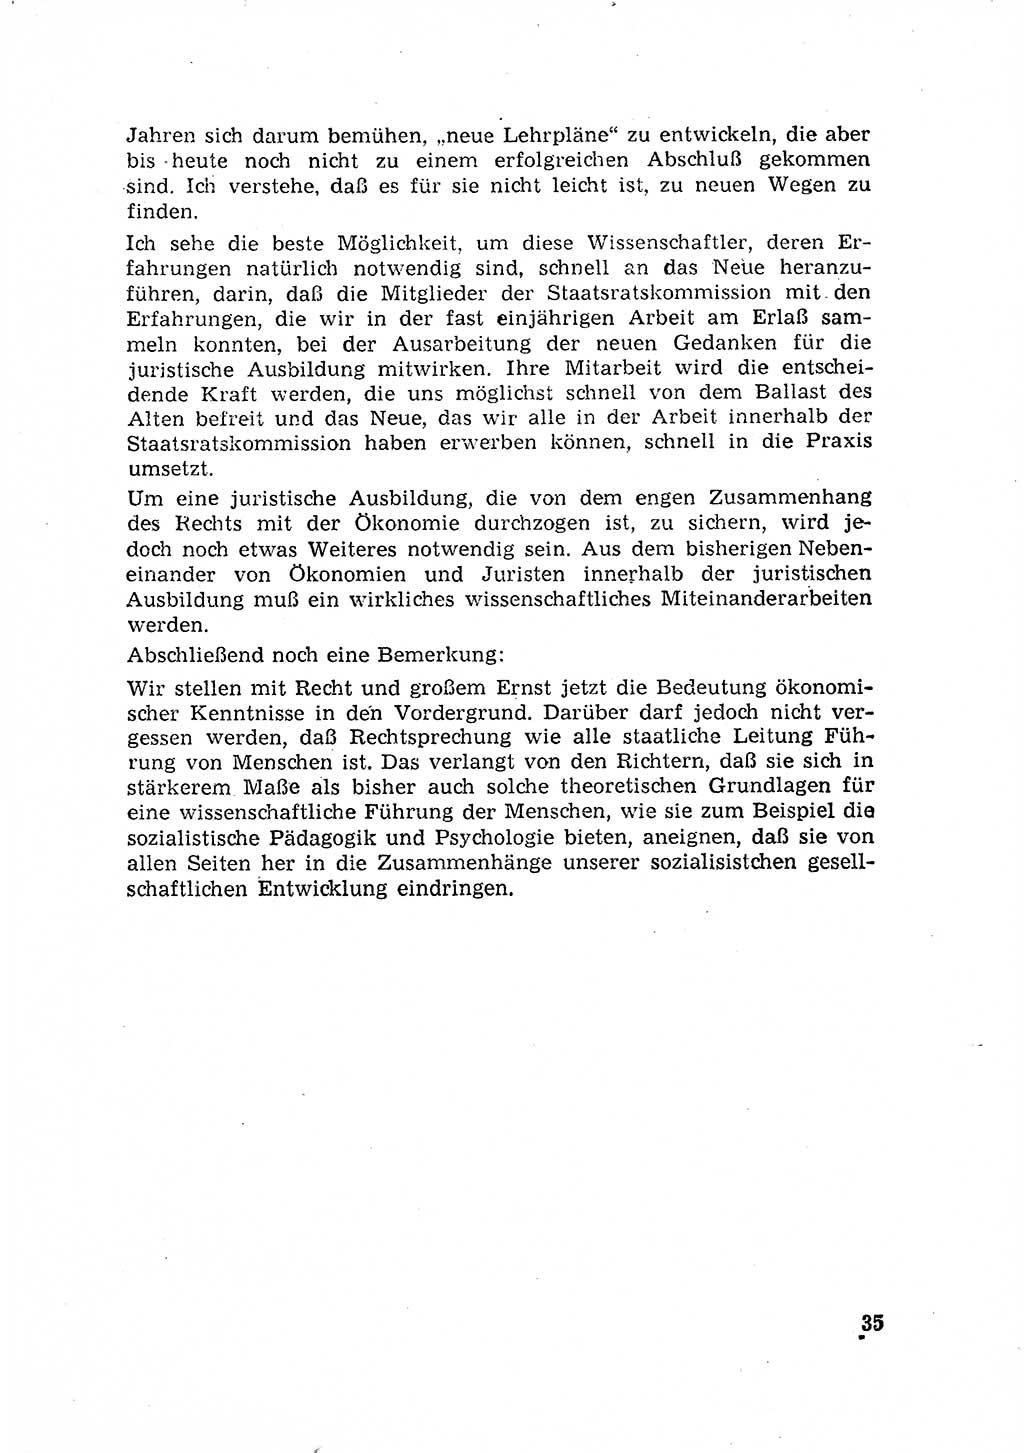 Rechtspflegeerlaß [Deutsche Demokratische Republik (DDR)] 1963, Seite 35 (R.-Pfl.-Erl. DDR 1963, S. 35)